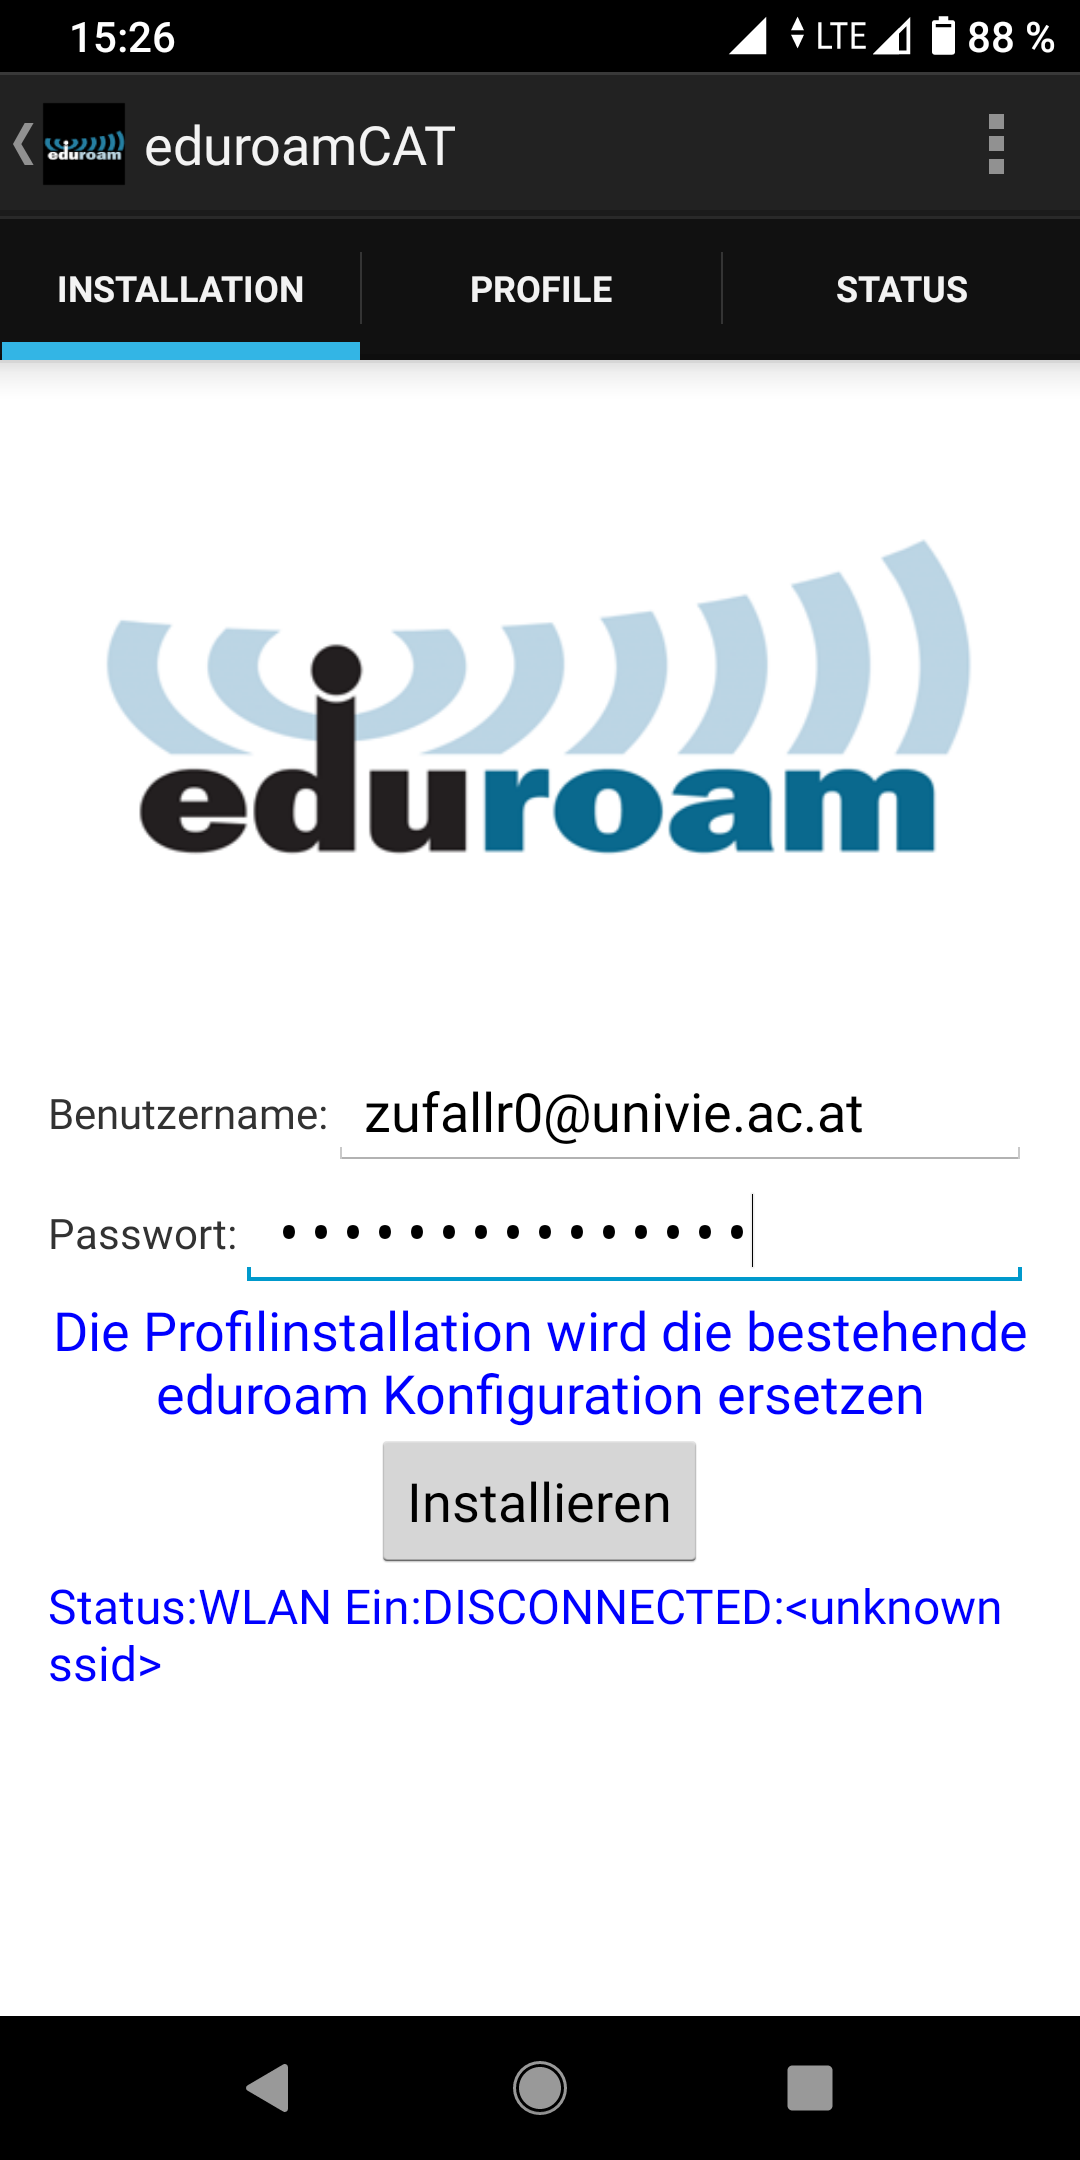 Screenshot Android Eduroam CAT App - eduroam-Zugangsdaten eingeben